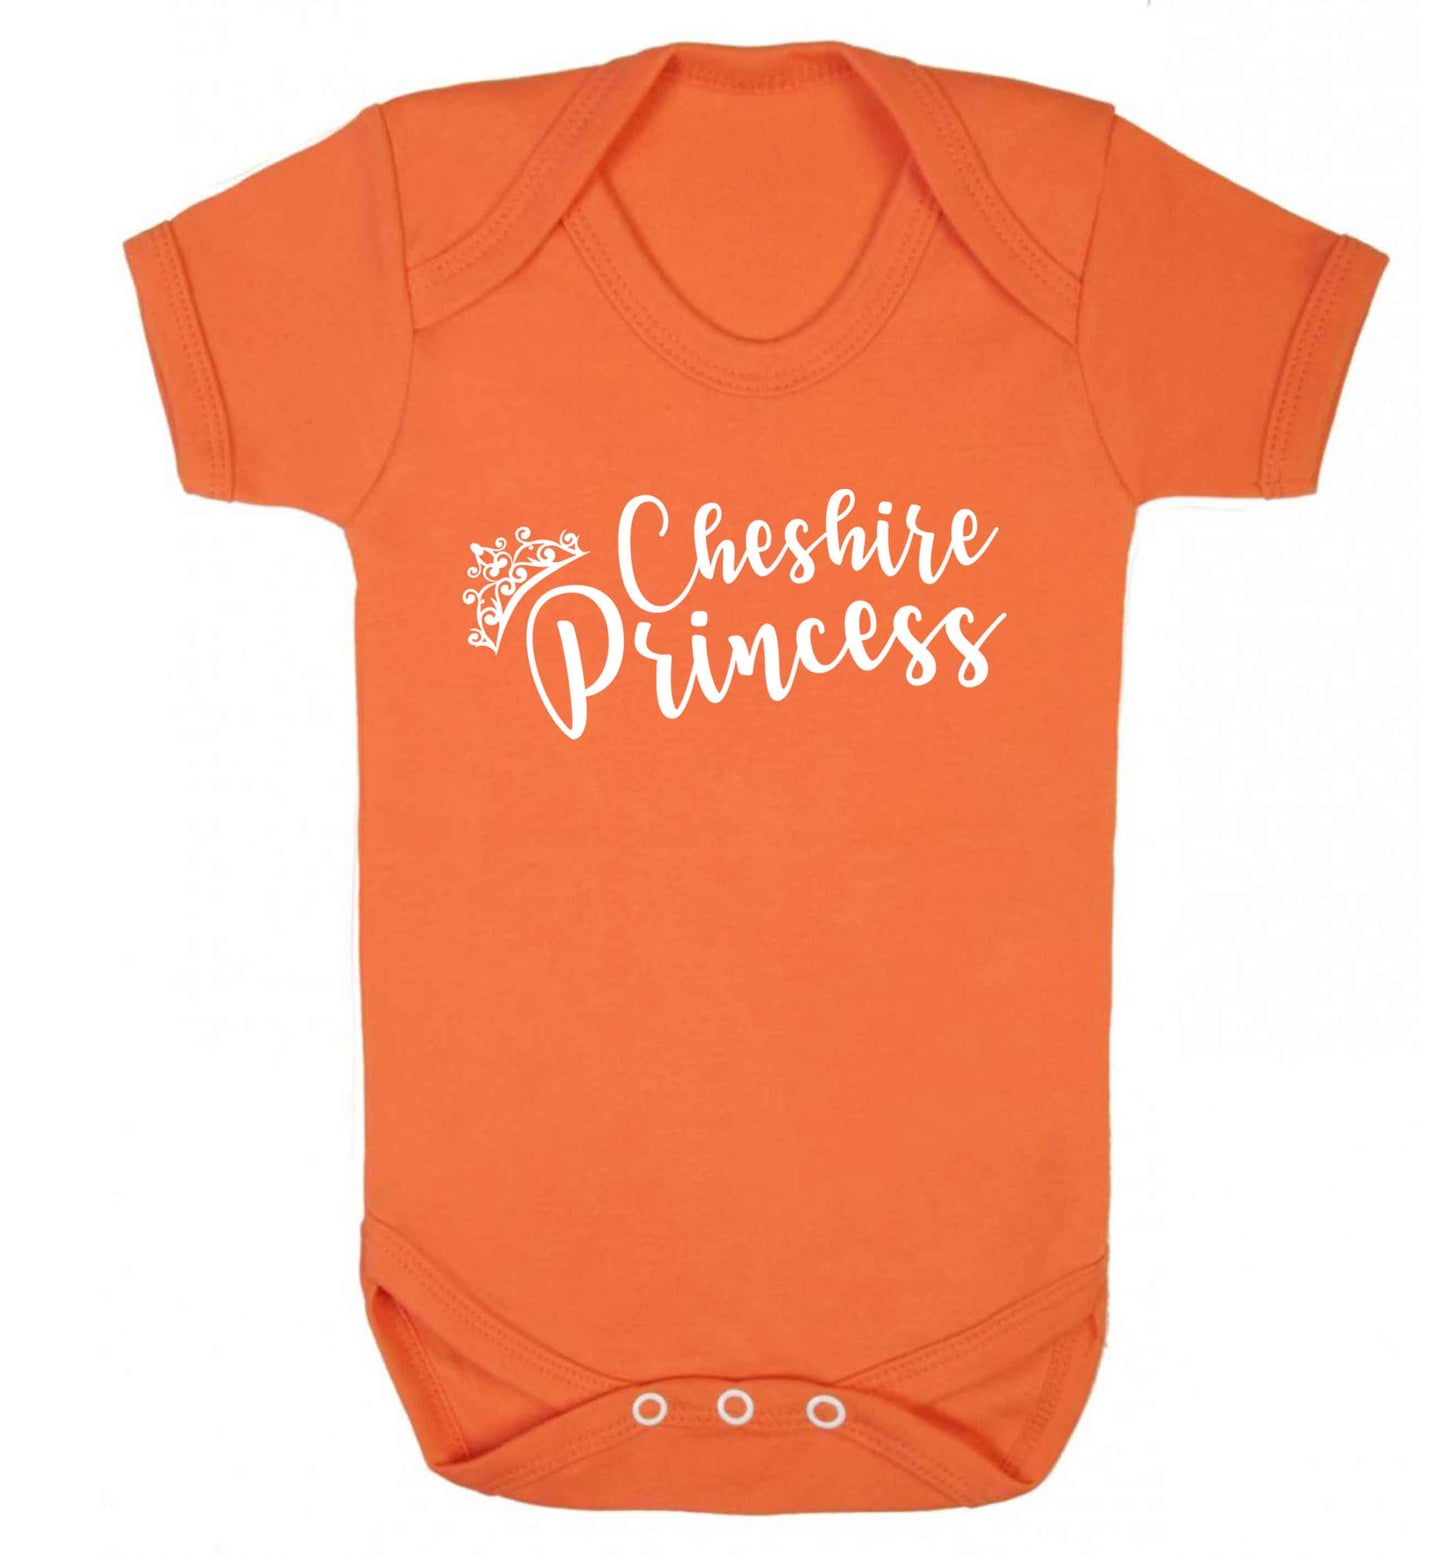 Cheshire princess Baby Vest orange 18-24 months